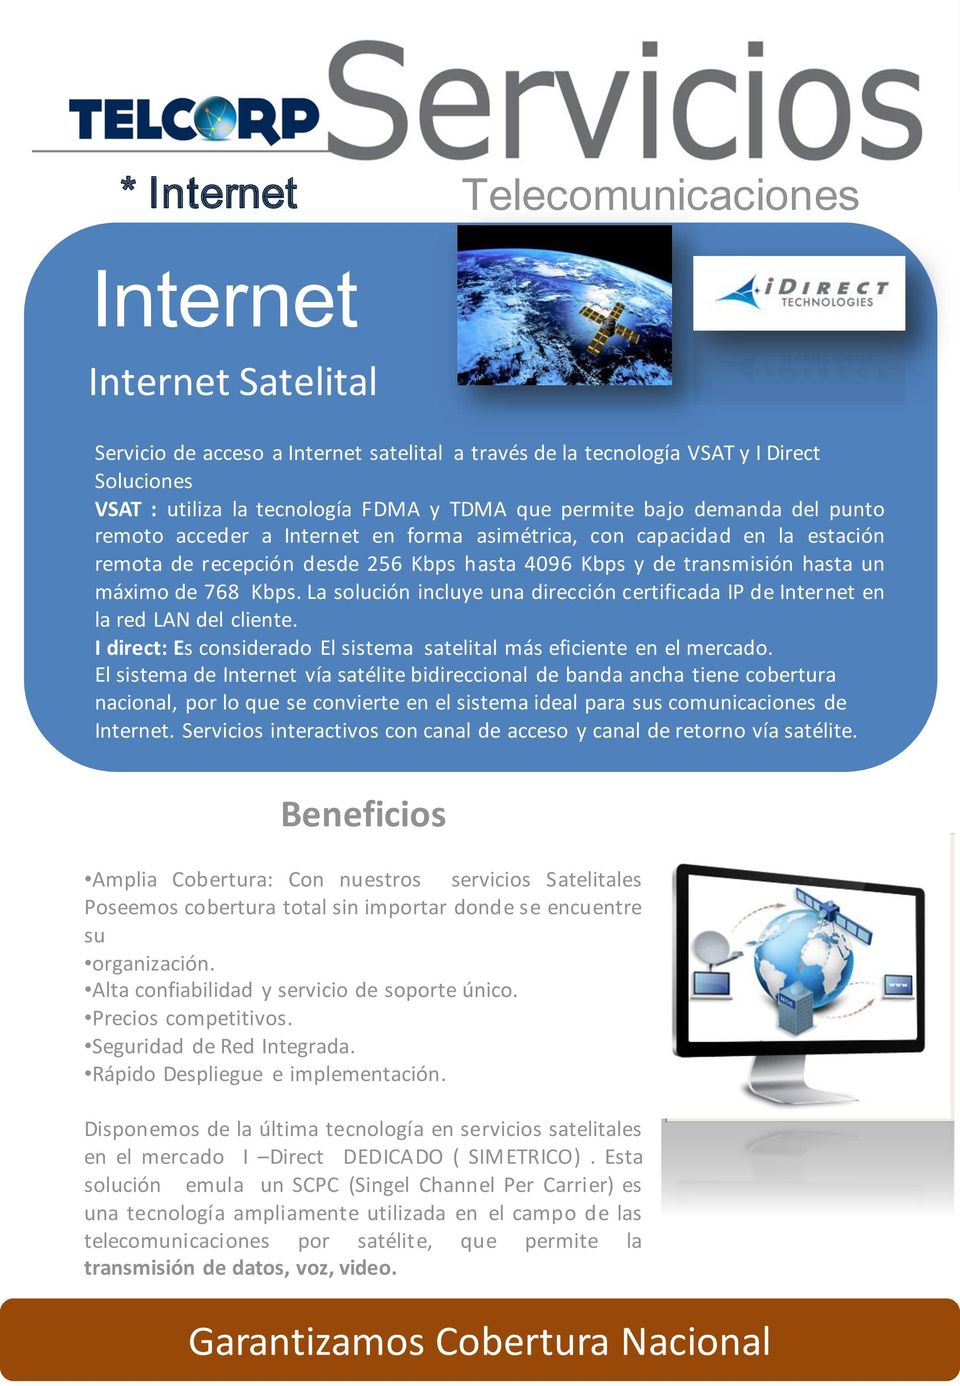 Kbps. La solución incluye una dirección certificada IP de Internet en la red LAN del cliente. I direct: Es considerado El sistema satelital más eficiente en el mercado.